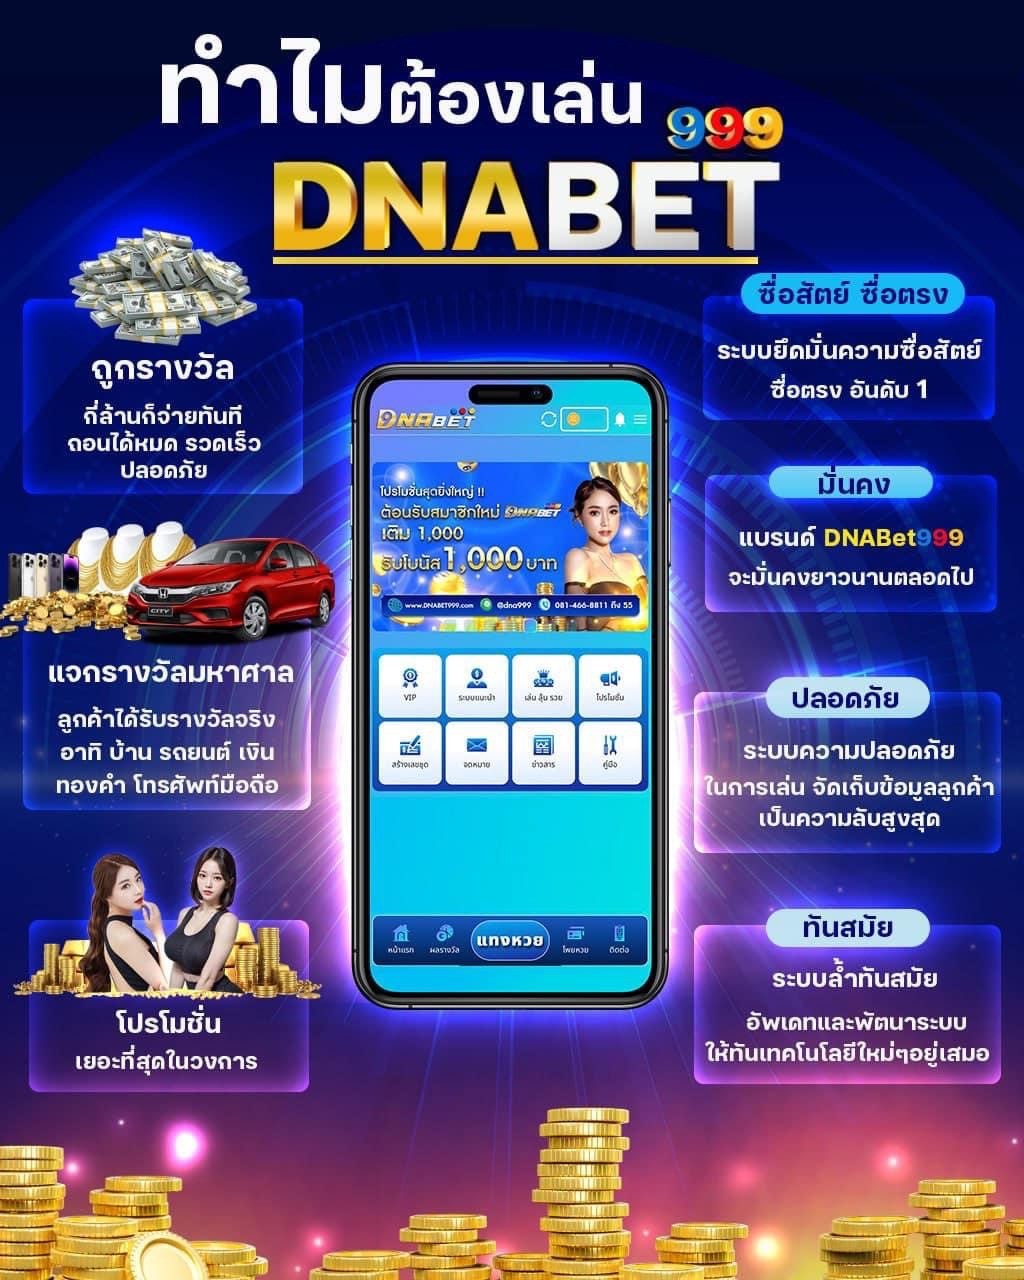 DNABET999 No.1 In Thailand